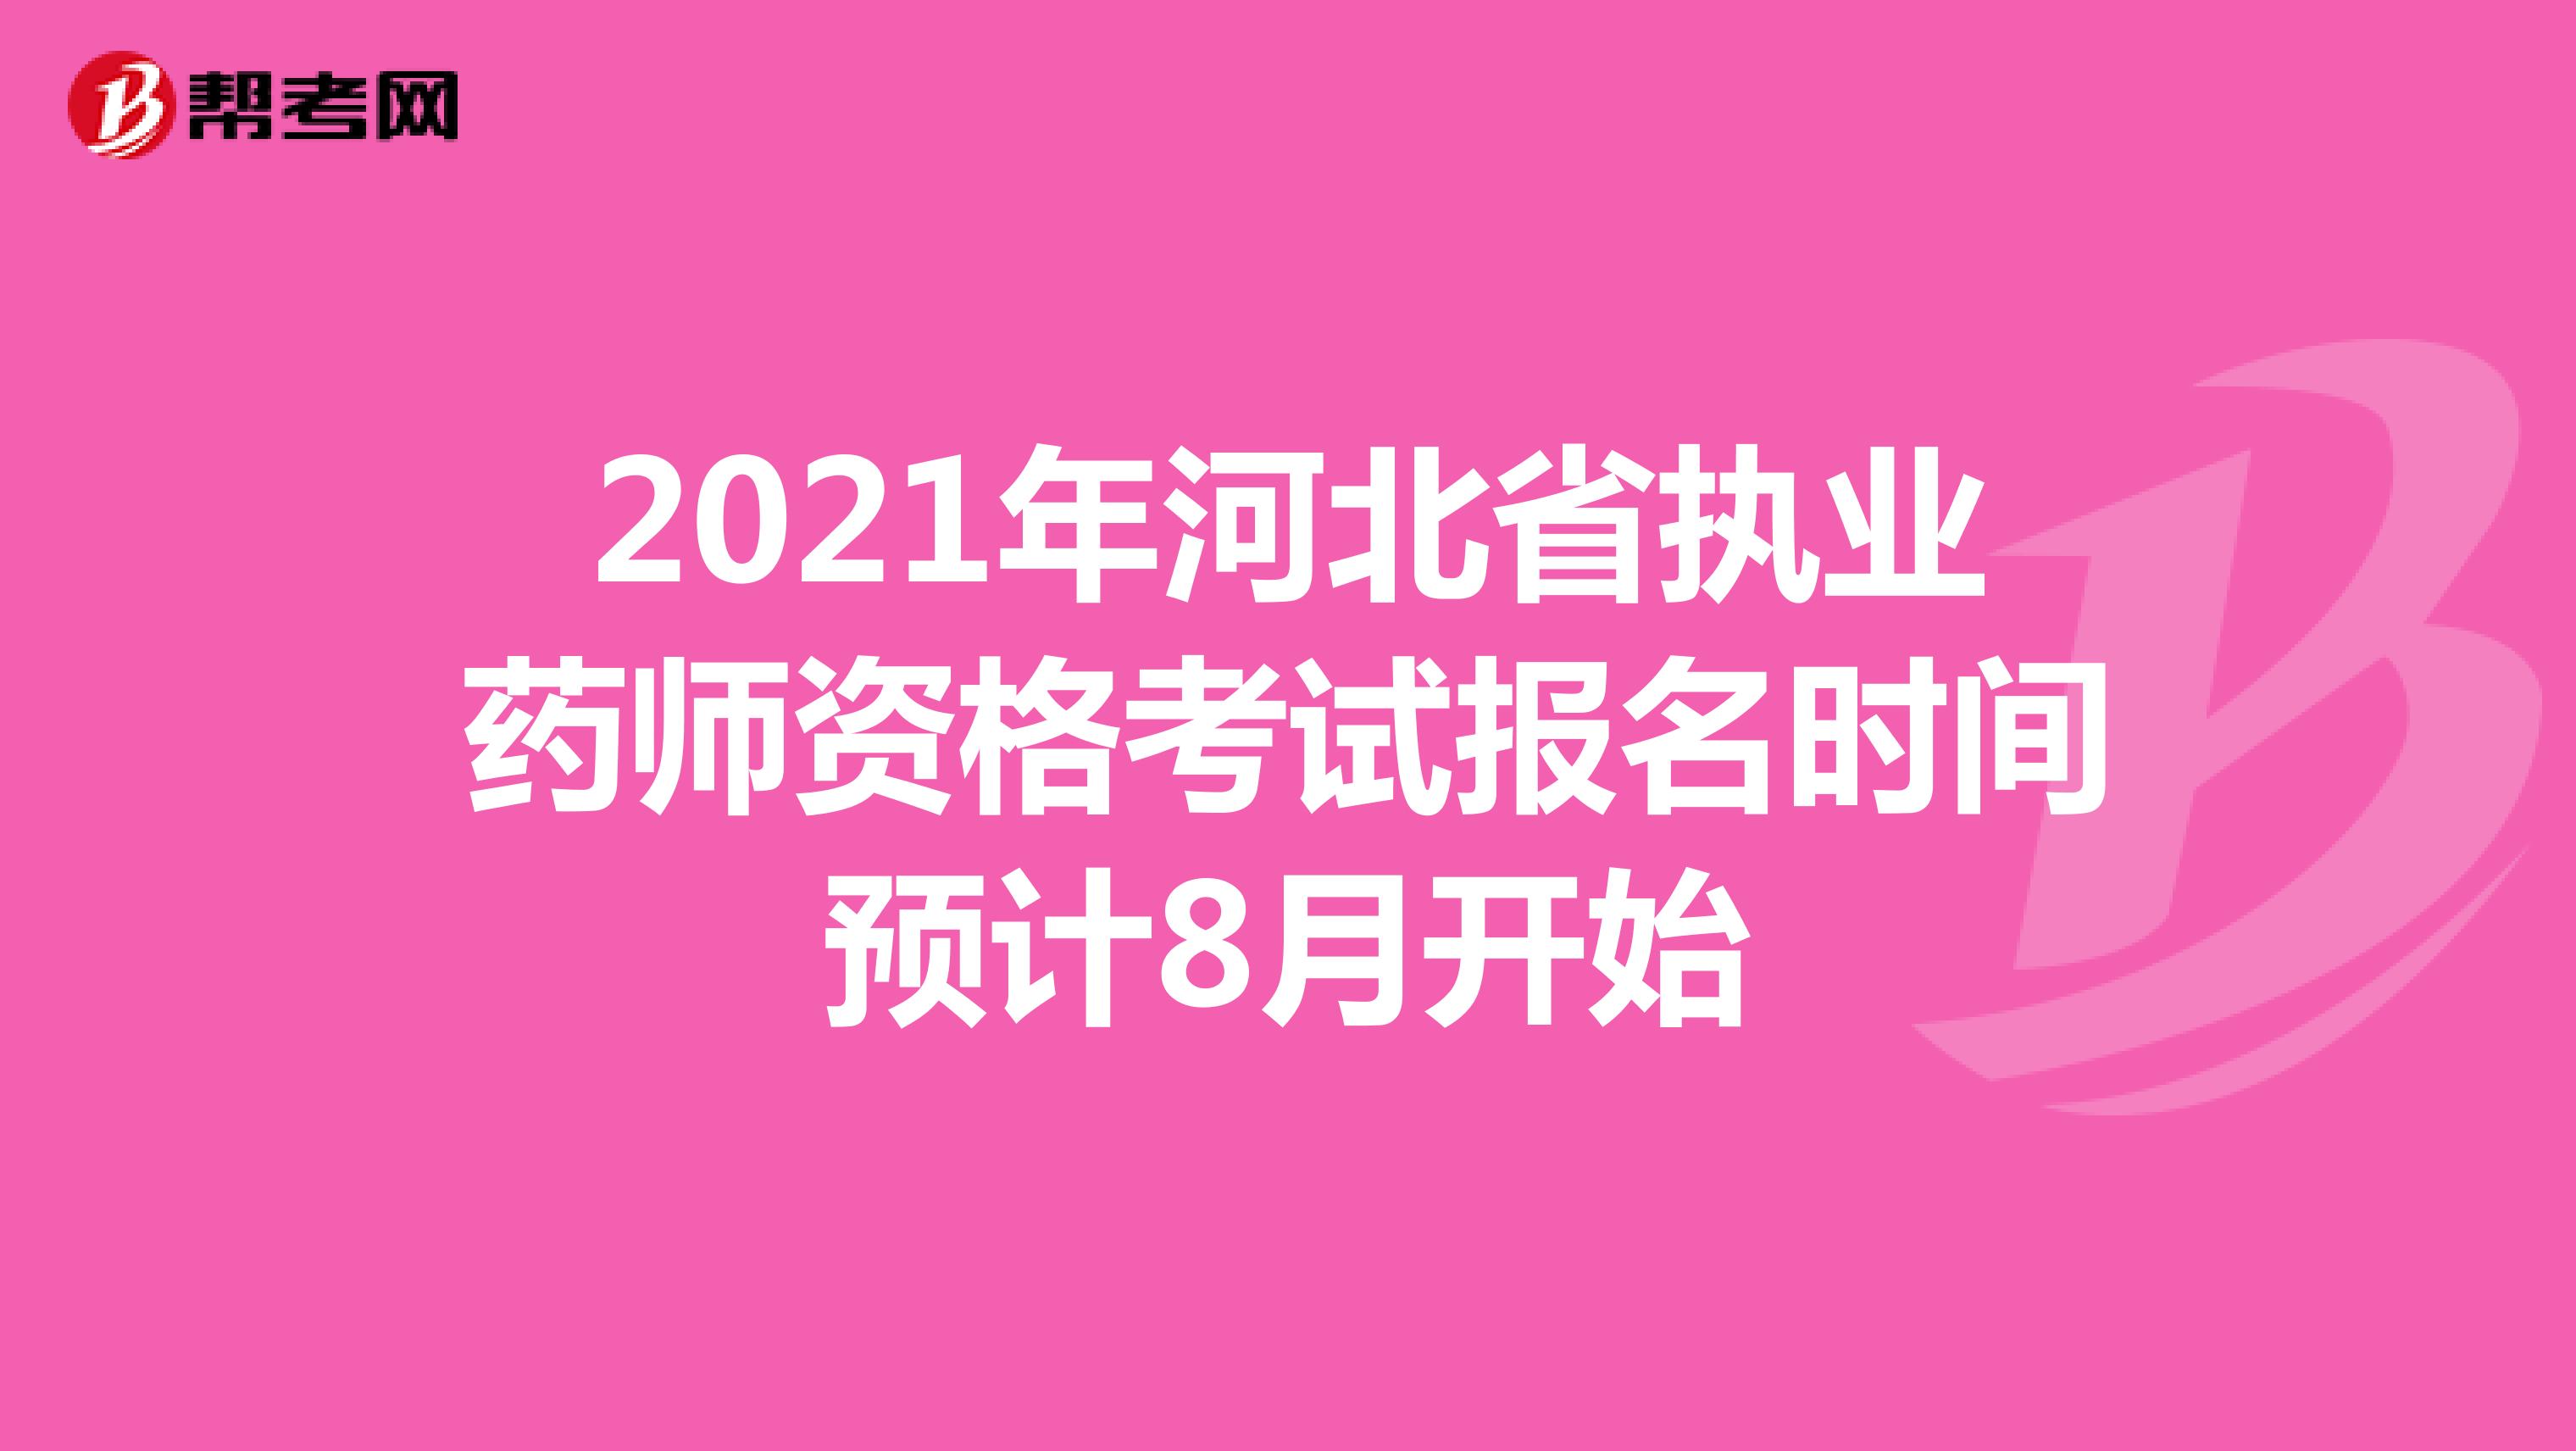 2021年河北省执业药师资格考试报名时间预计8月开始